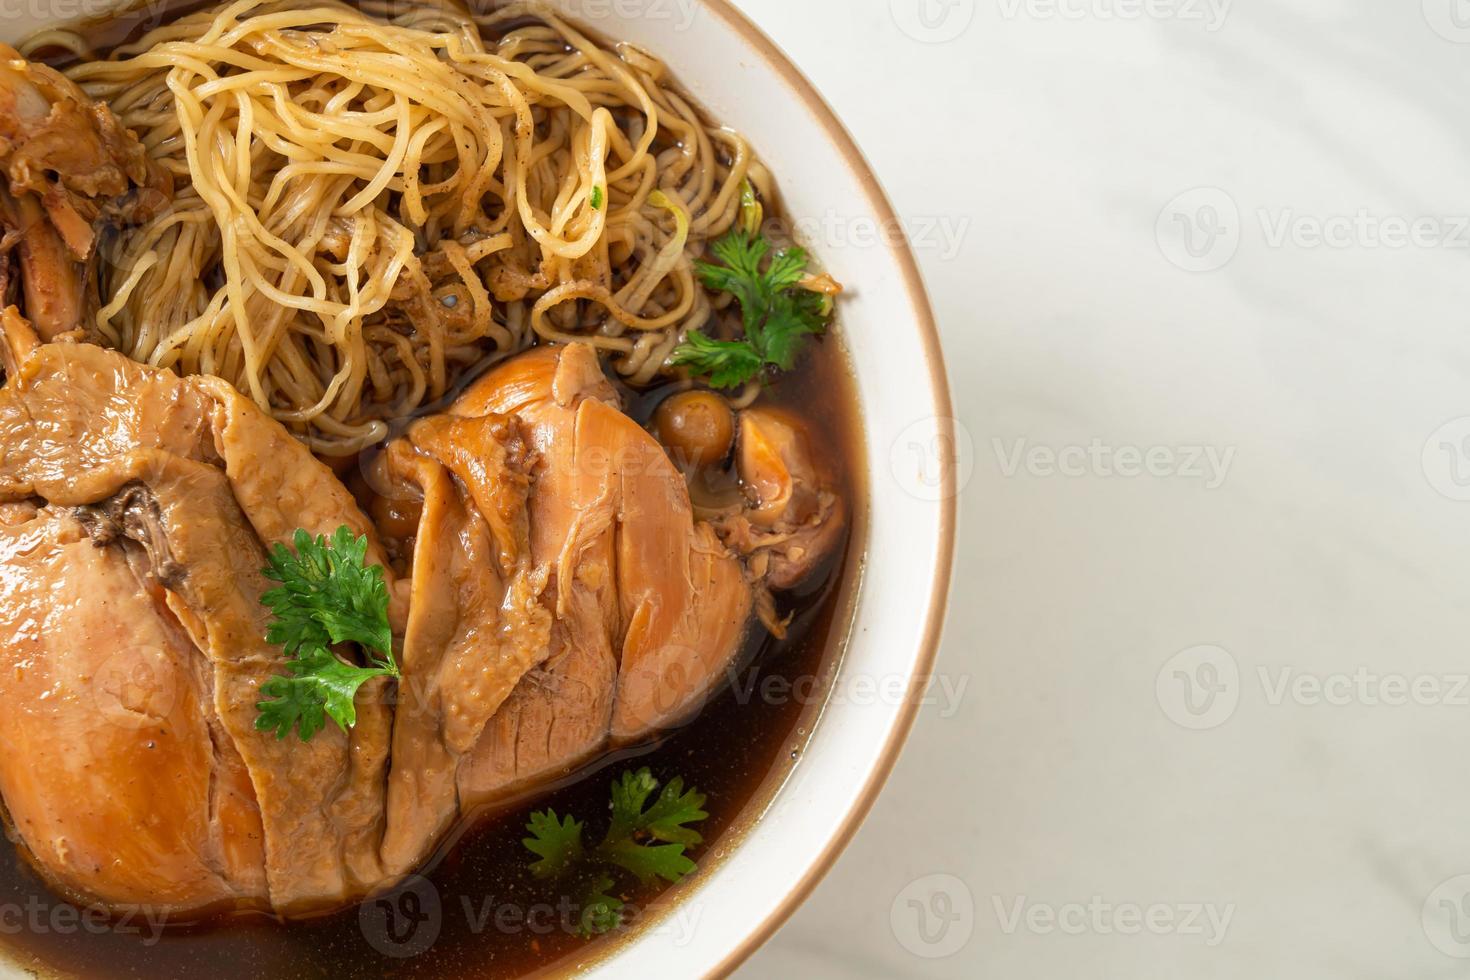 fideos con pollo a la brasa en sopa marrón foto